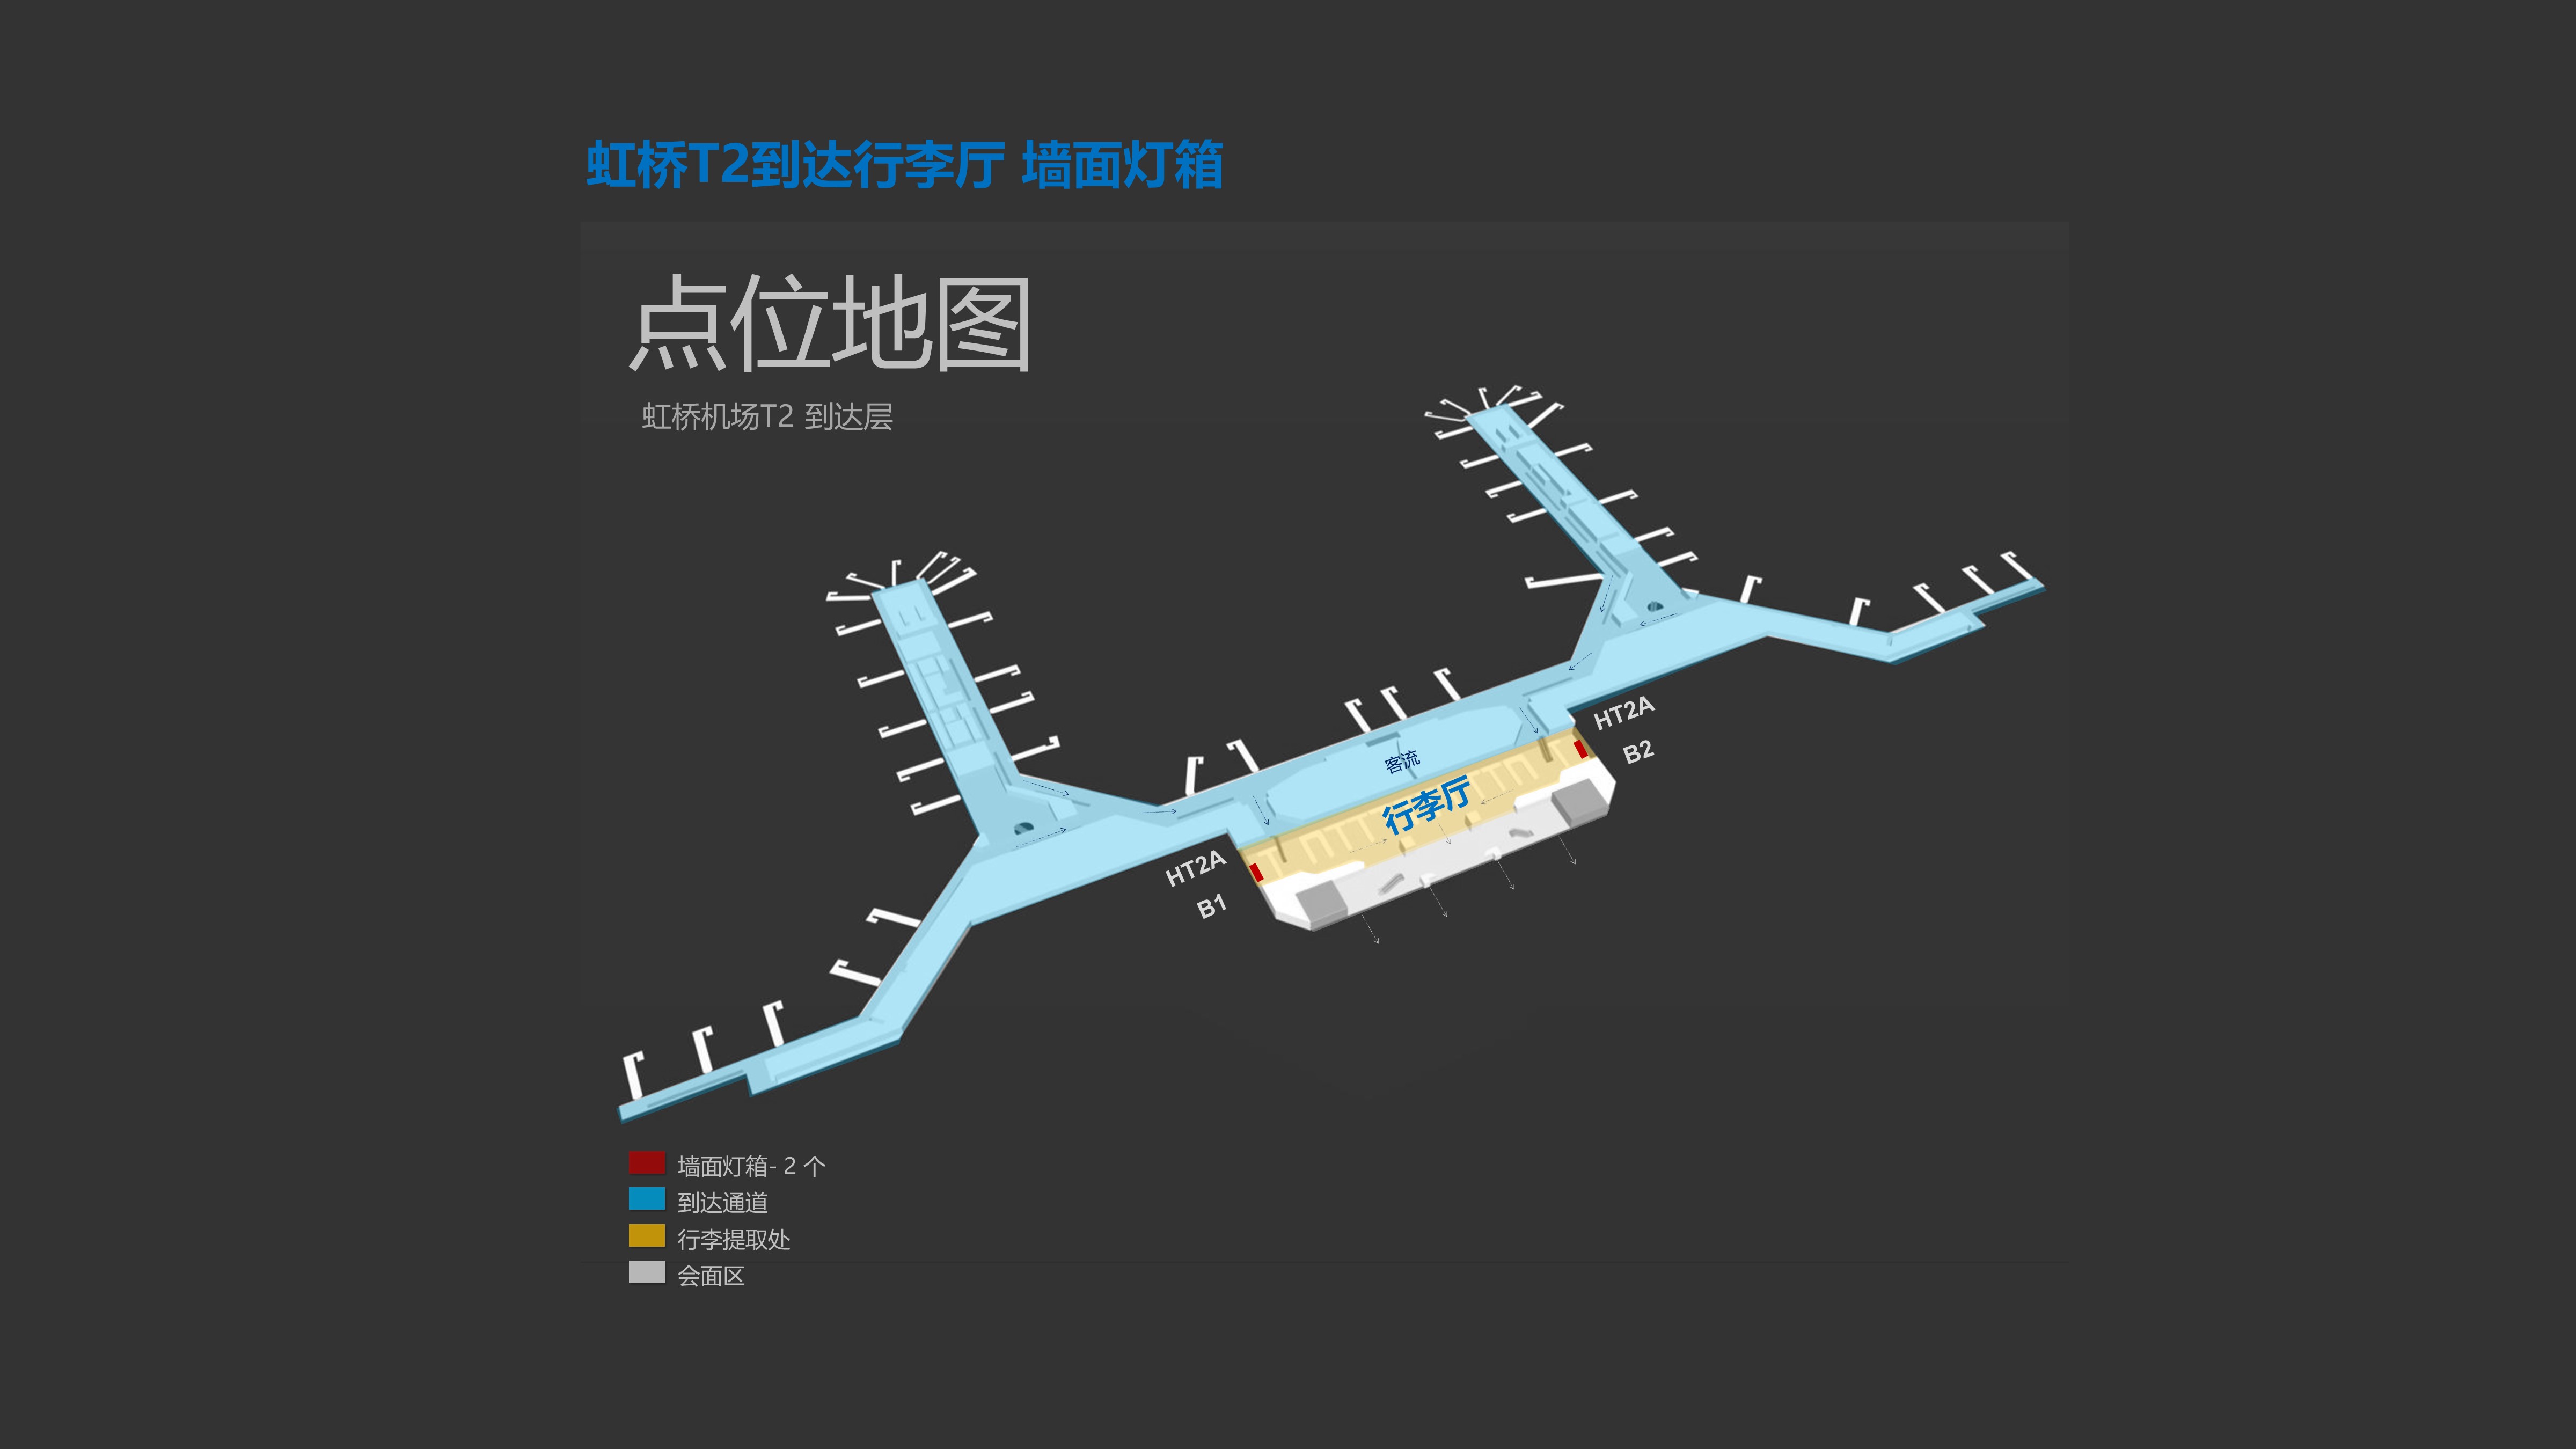 上海机场广告-虹桥T2到达行李厅墙面灯箱位置图